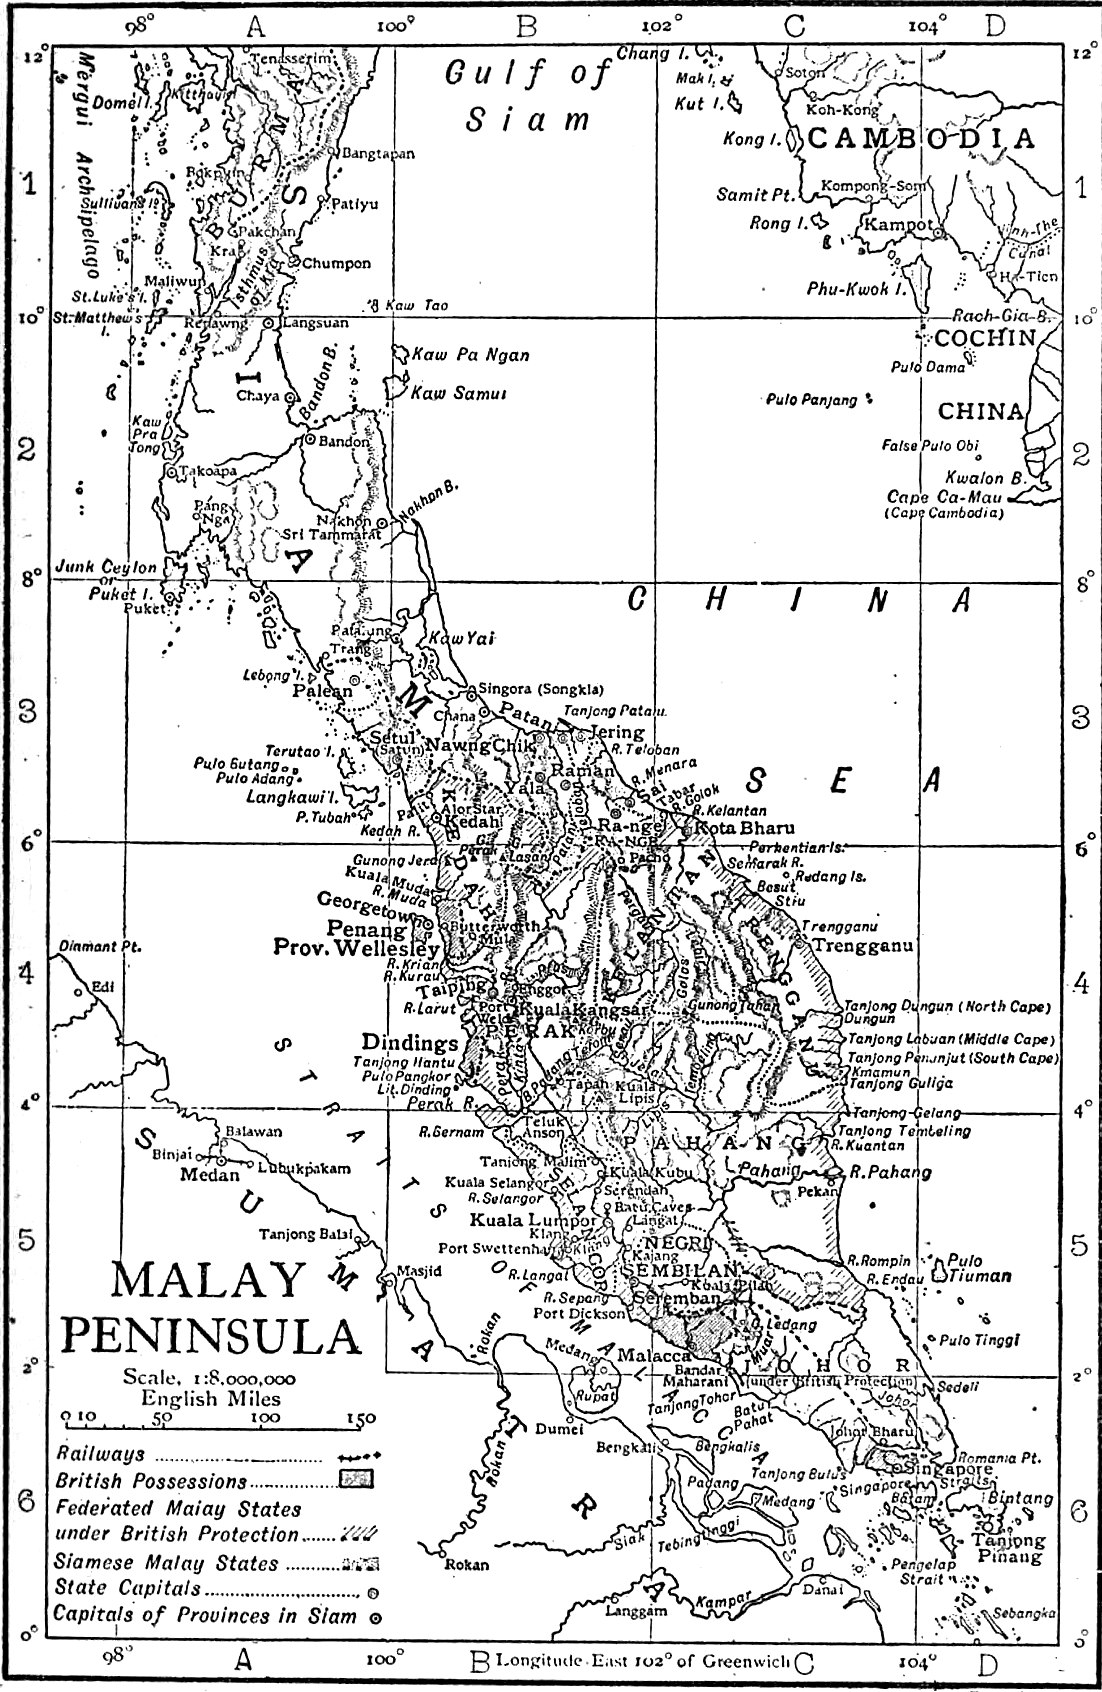 Malay peninsula